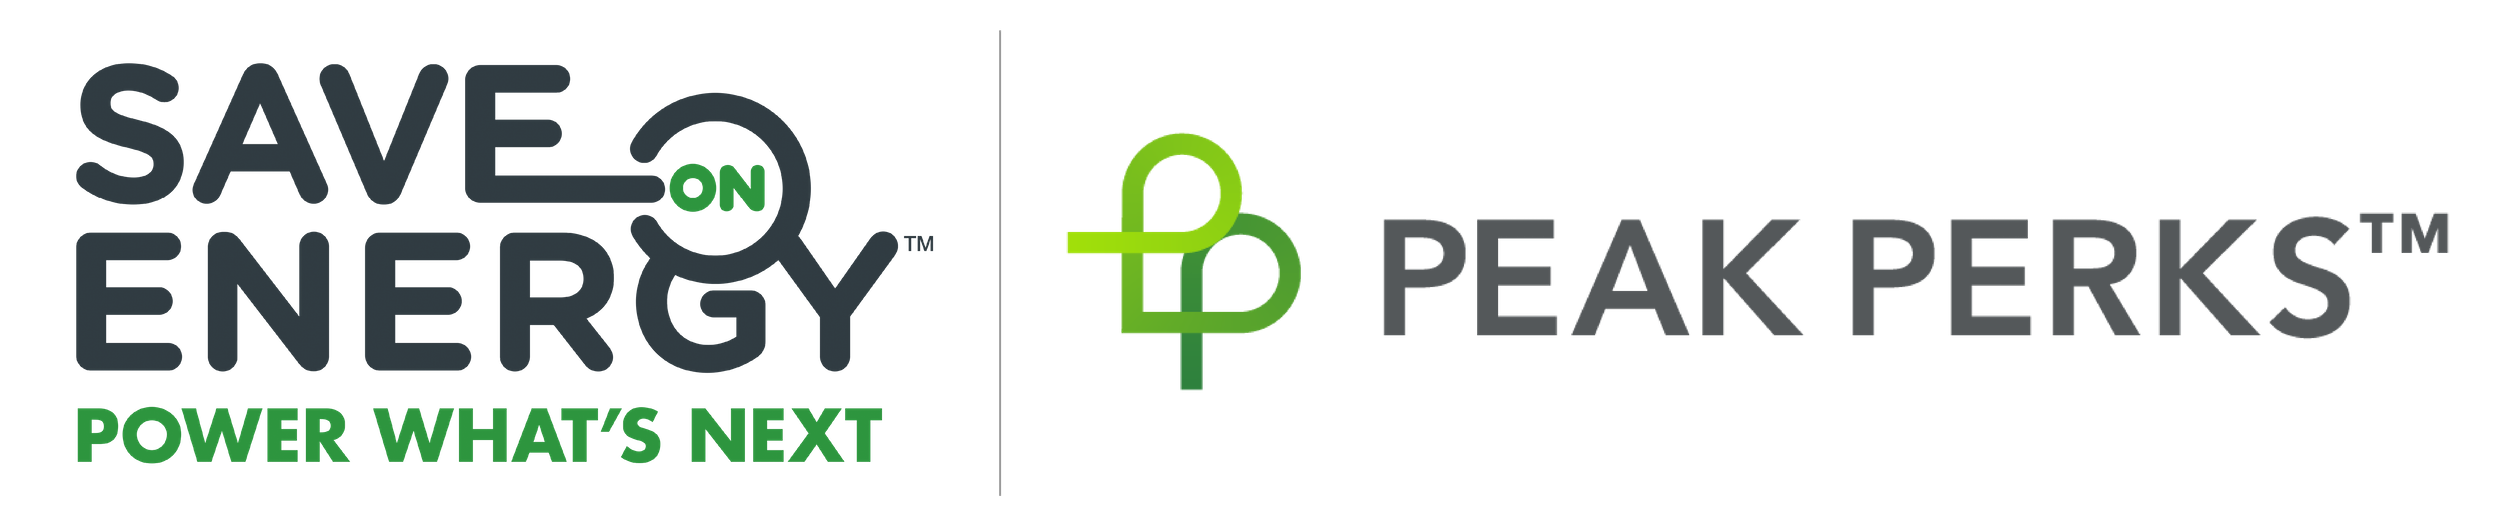 IESO Peak Perks logo